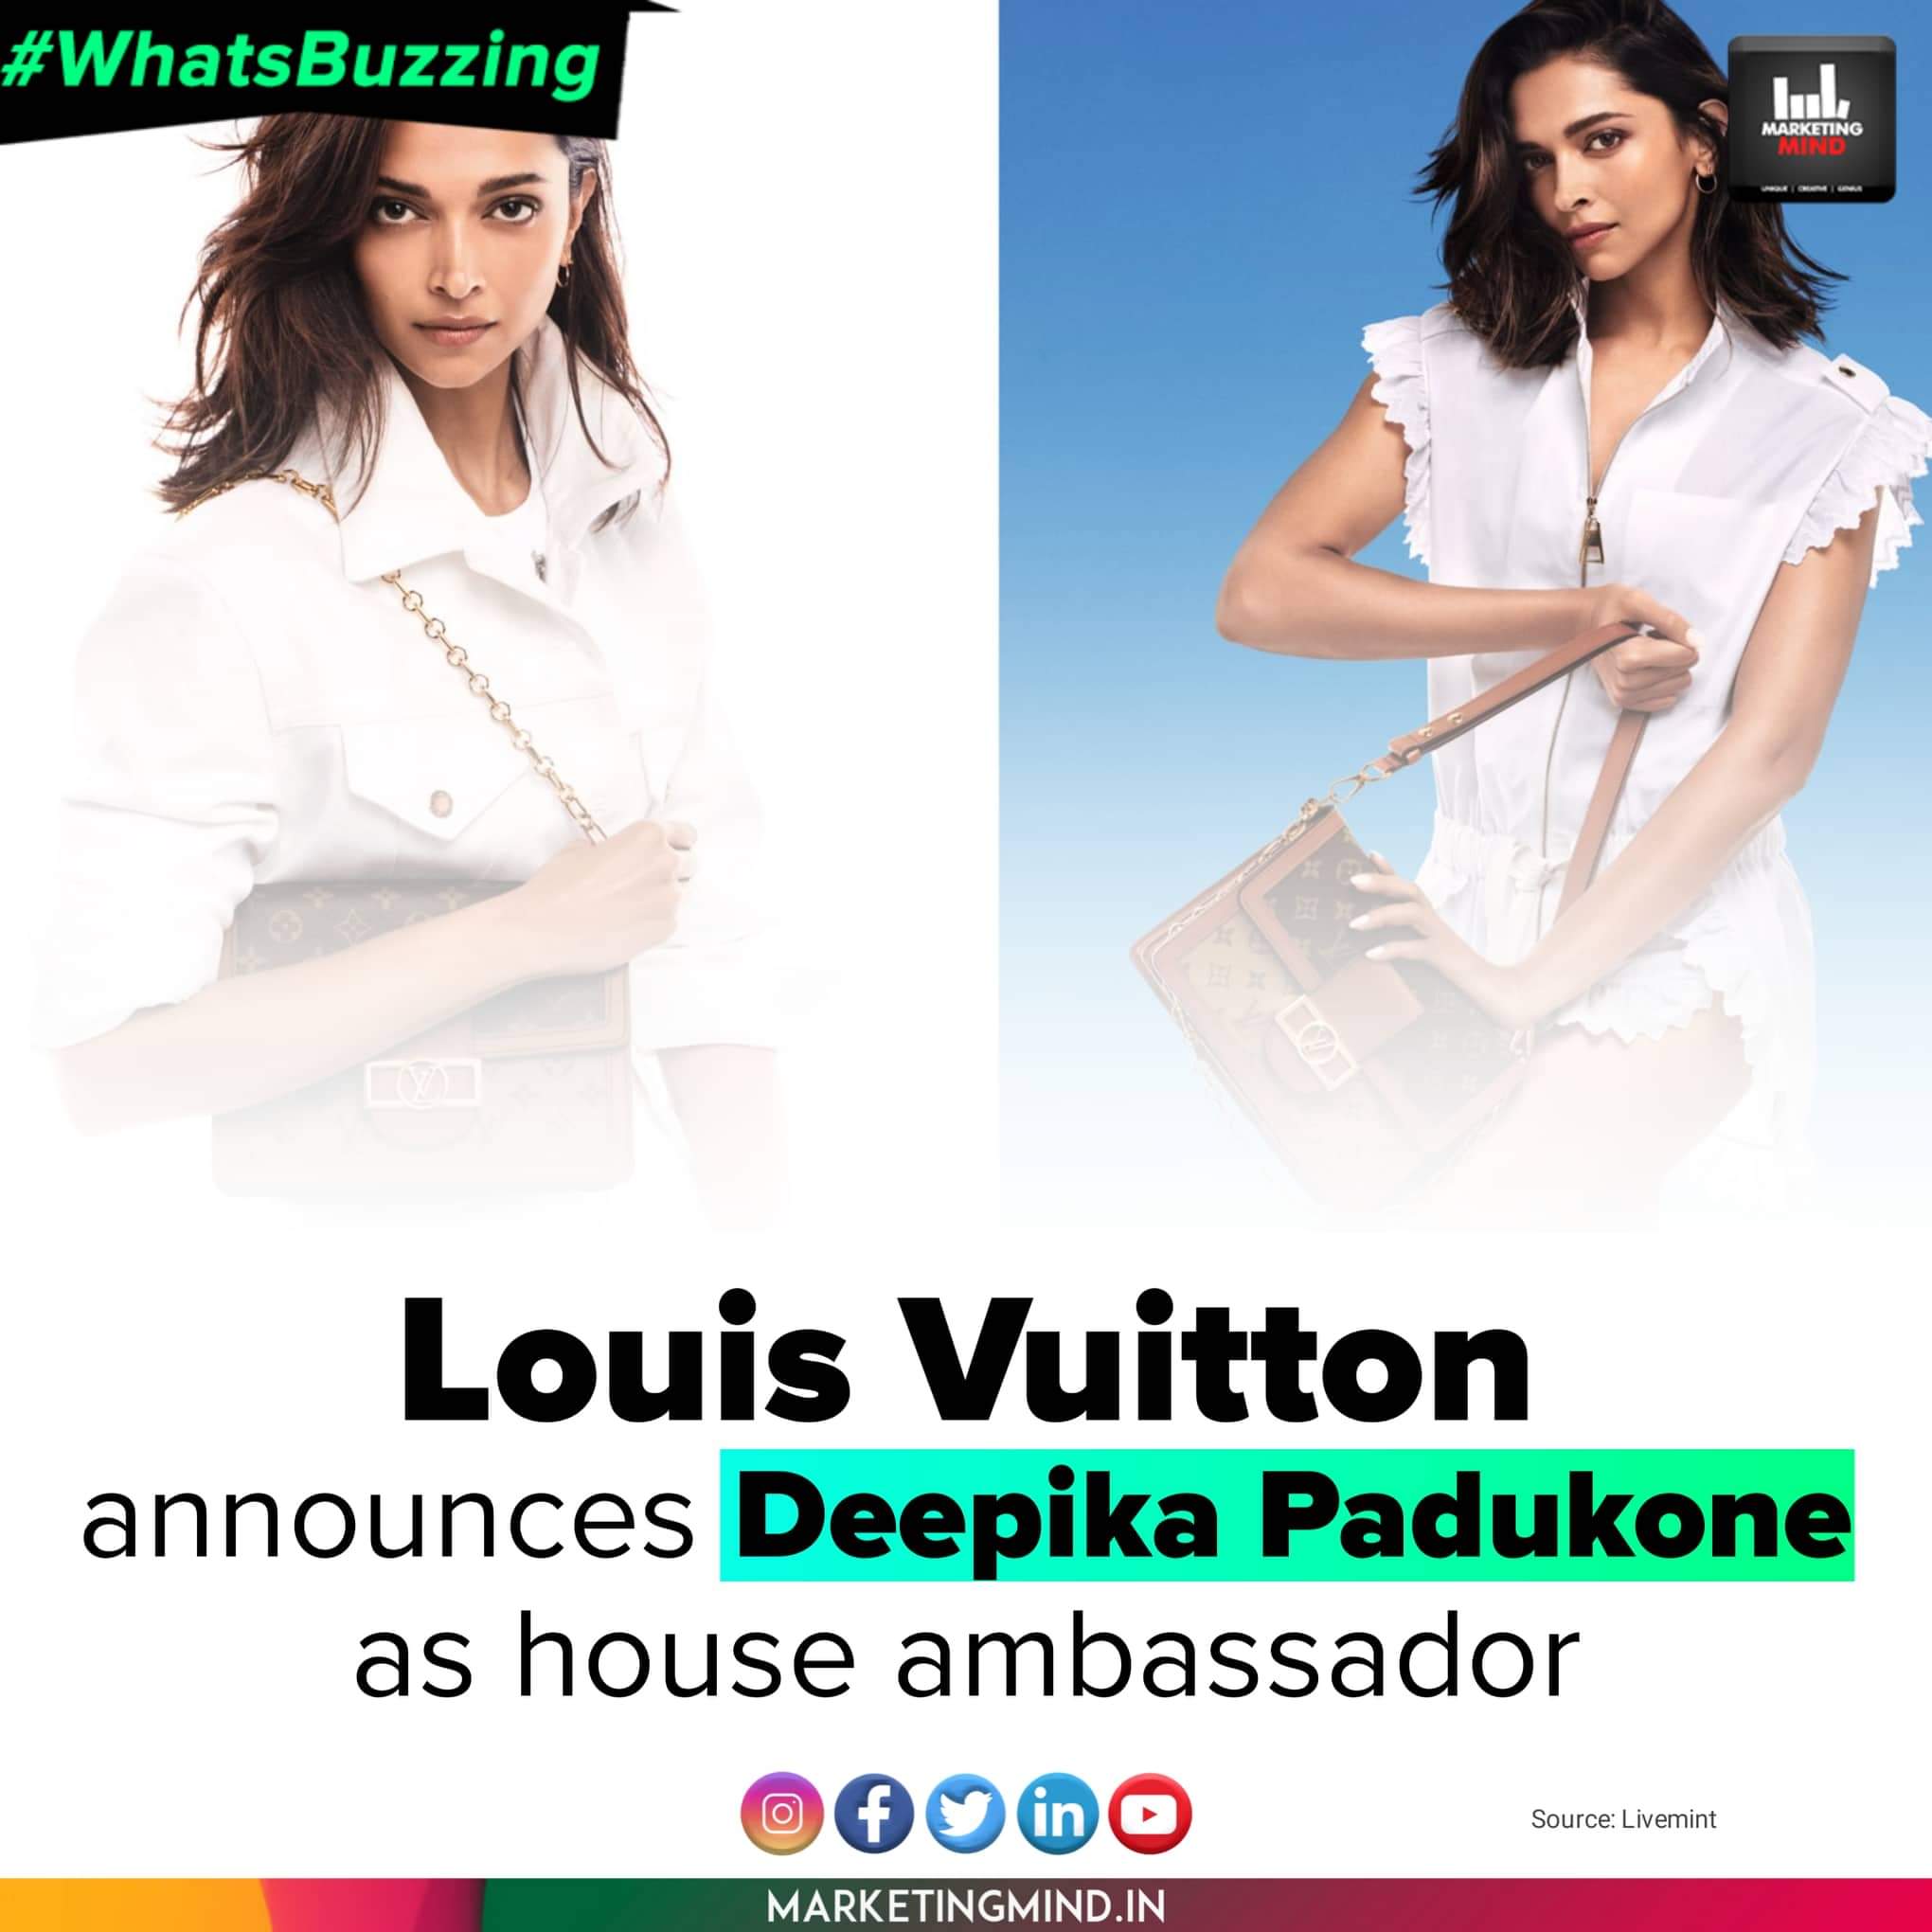 Louis Vuitton Announces Deepika Padukone As Their New House